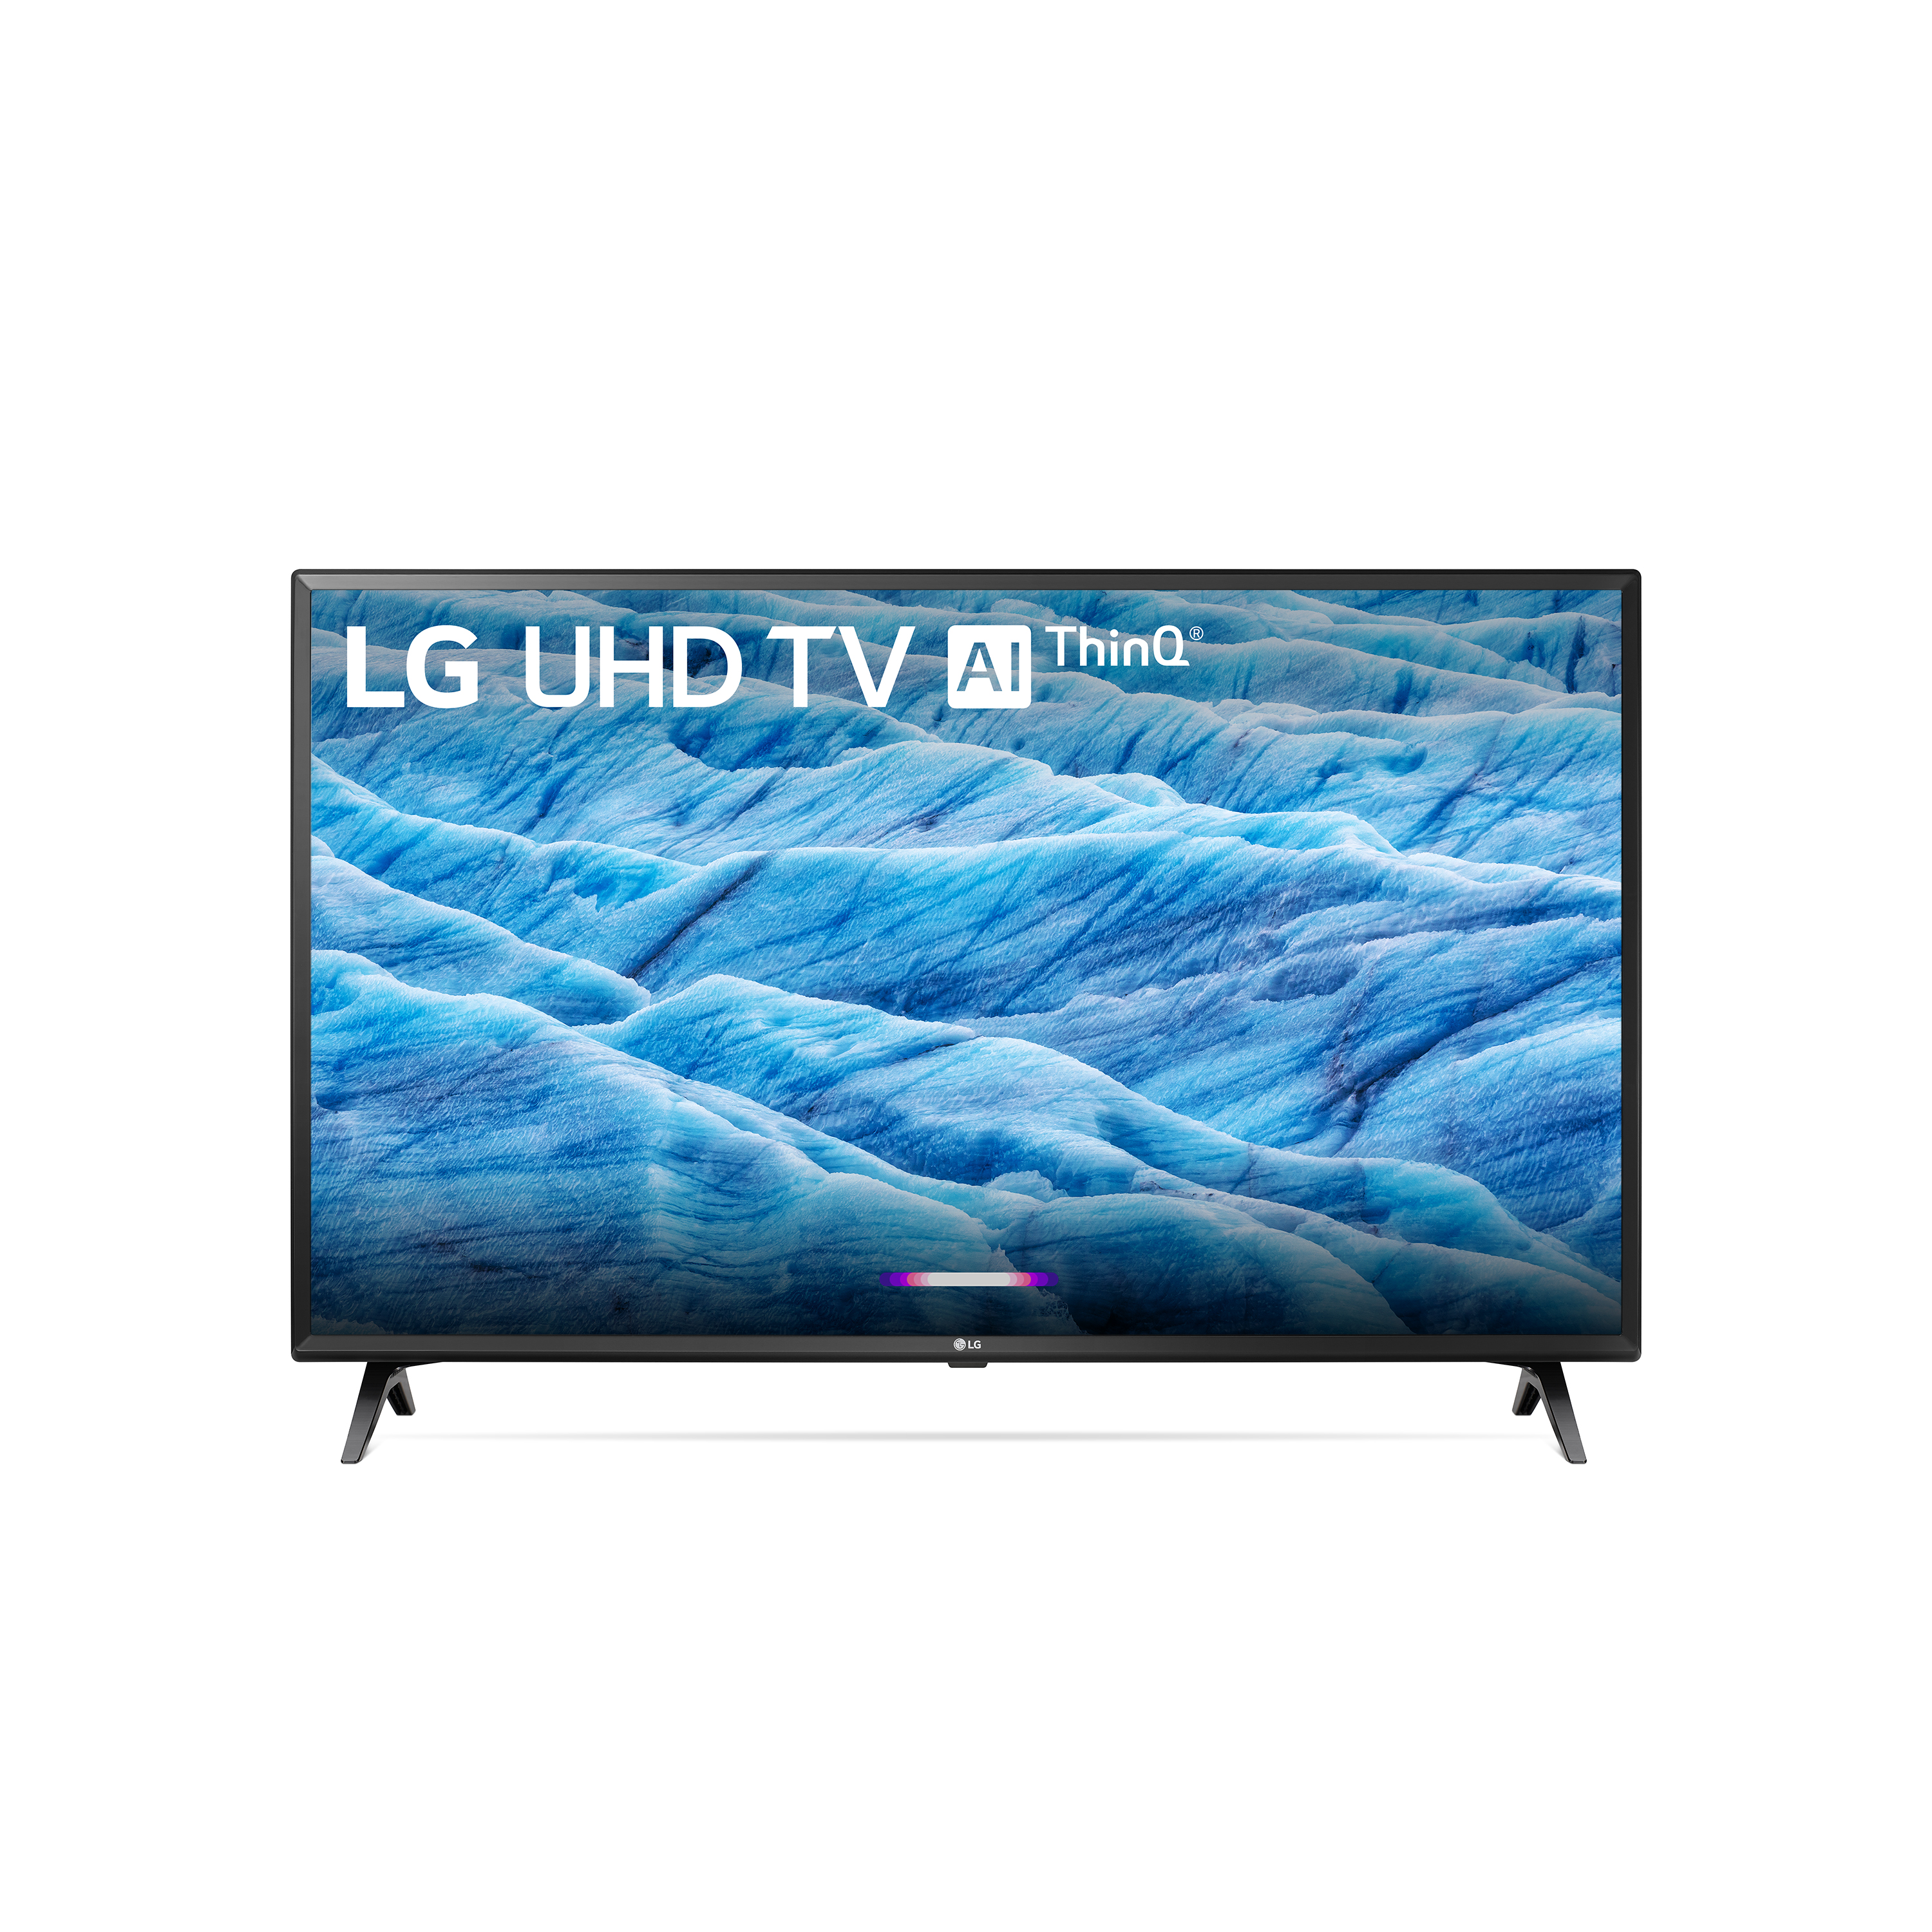 LG 49" Class 4K (2160P) Ultra HD Smart LED HDR TV 49UM7300PUA 2019 Model - image 1 of 13